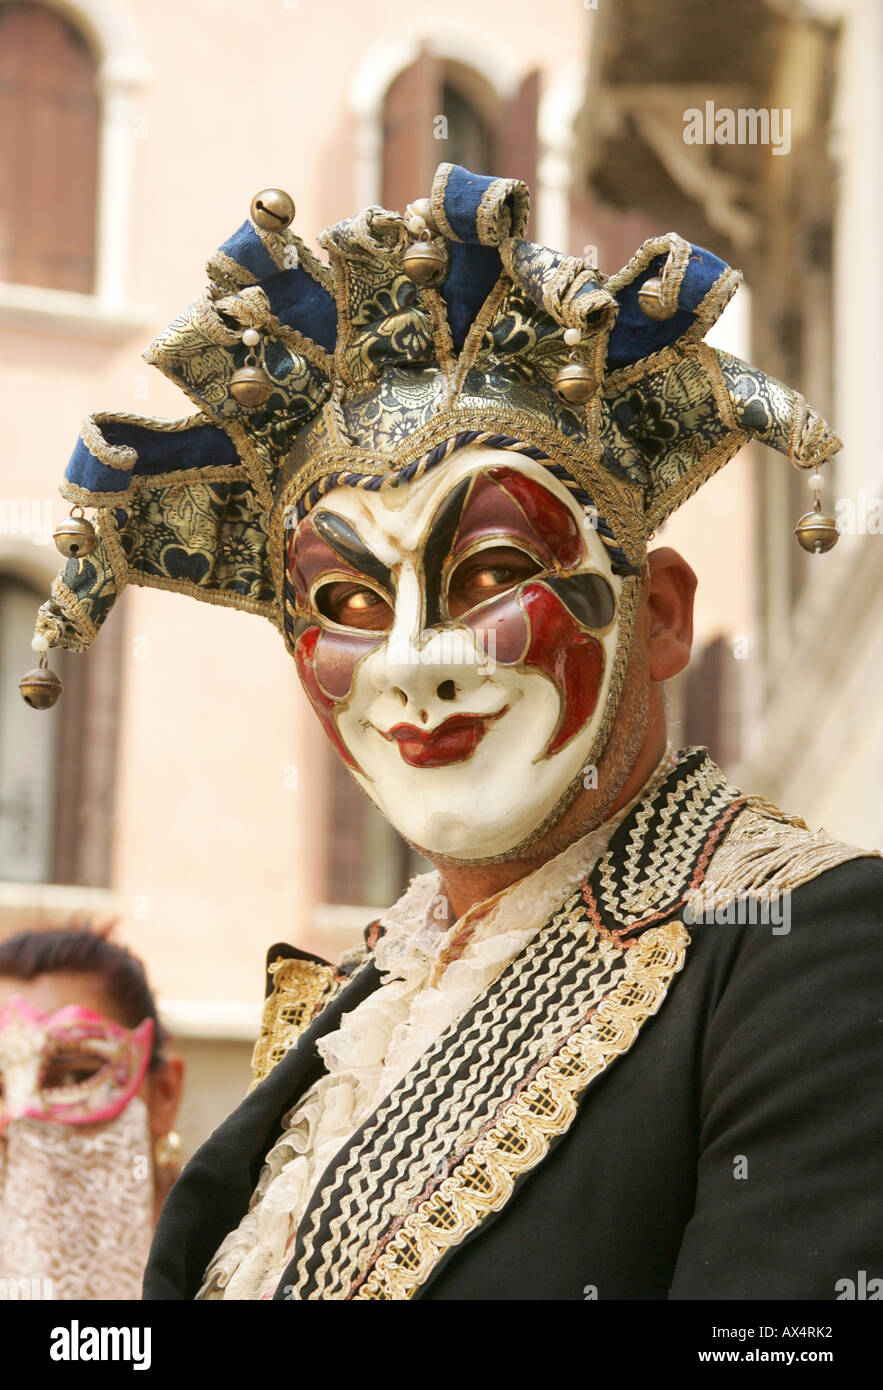 Venetian carnival mask, Venice Stock Photo